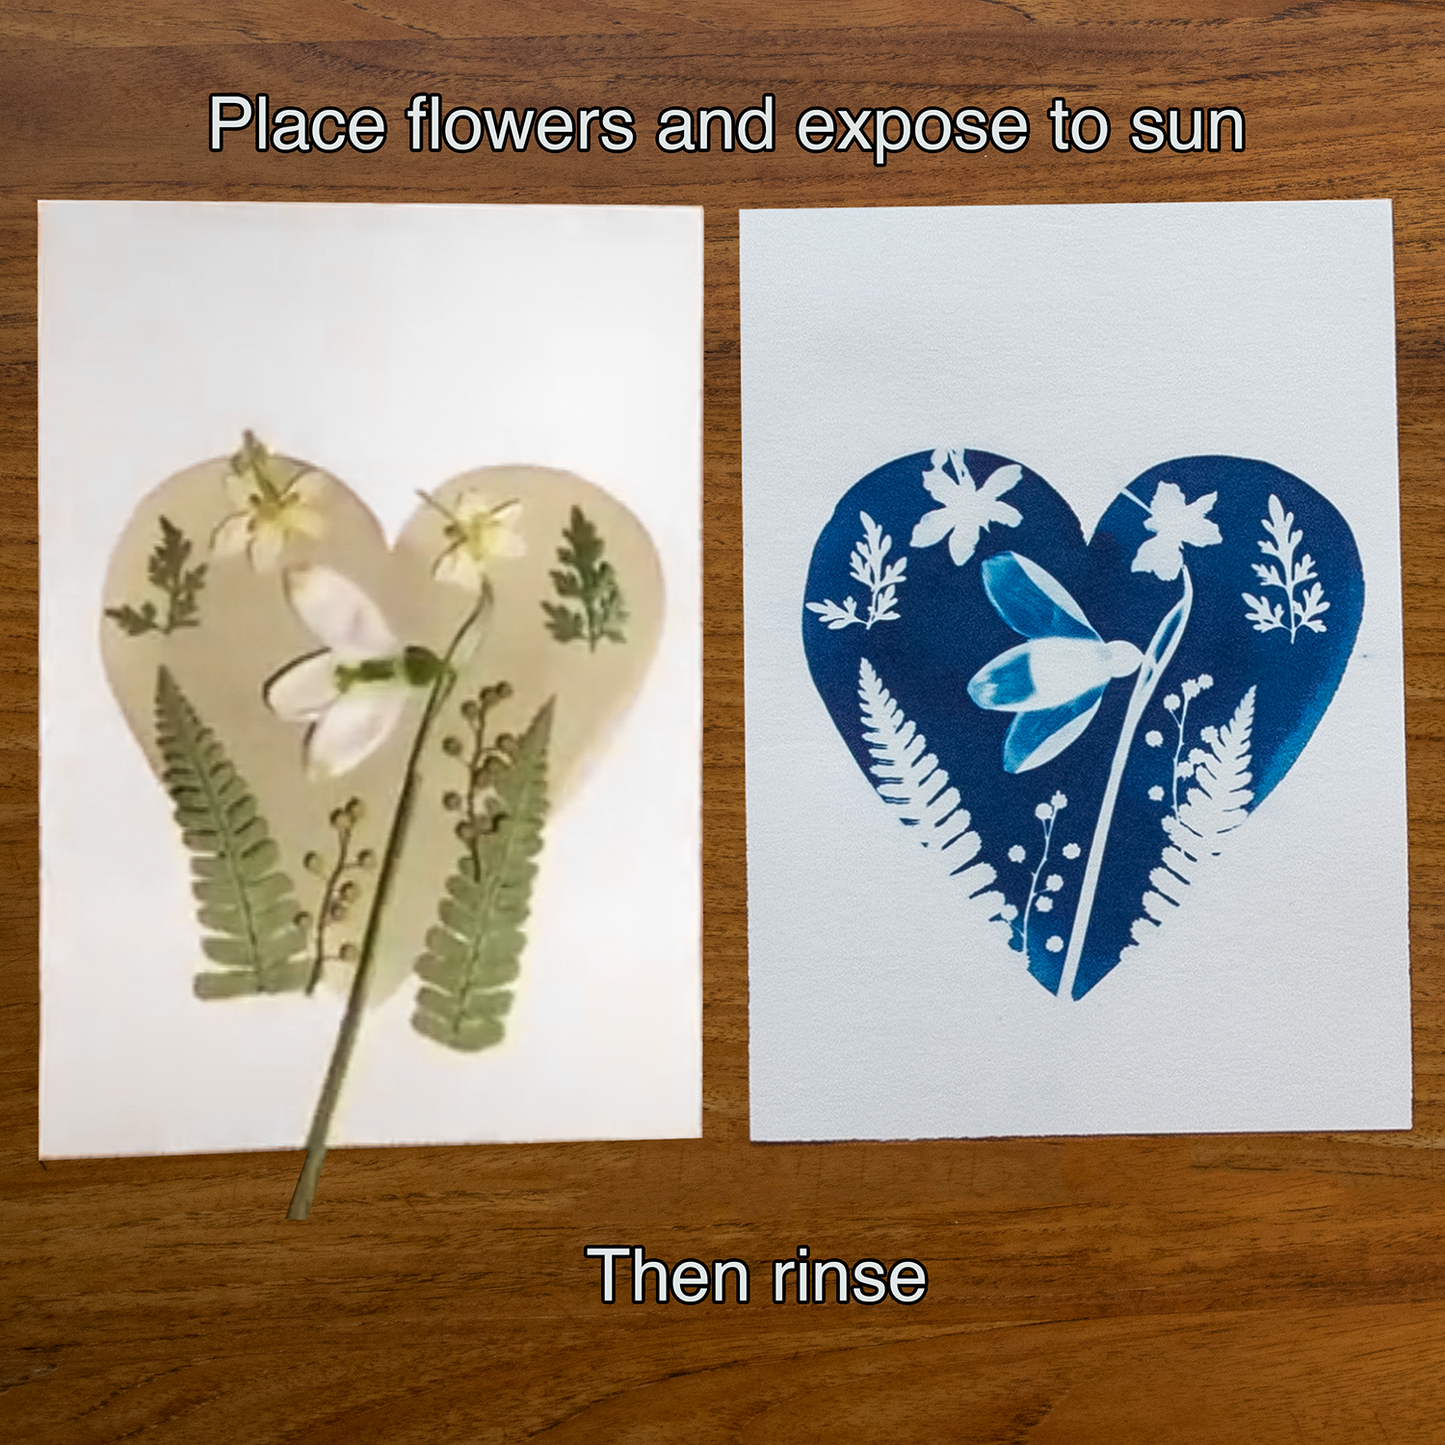 Love Plants Cyanotype Kit